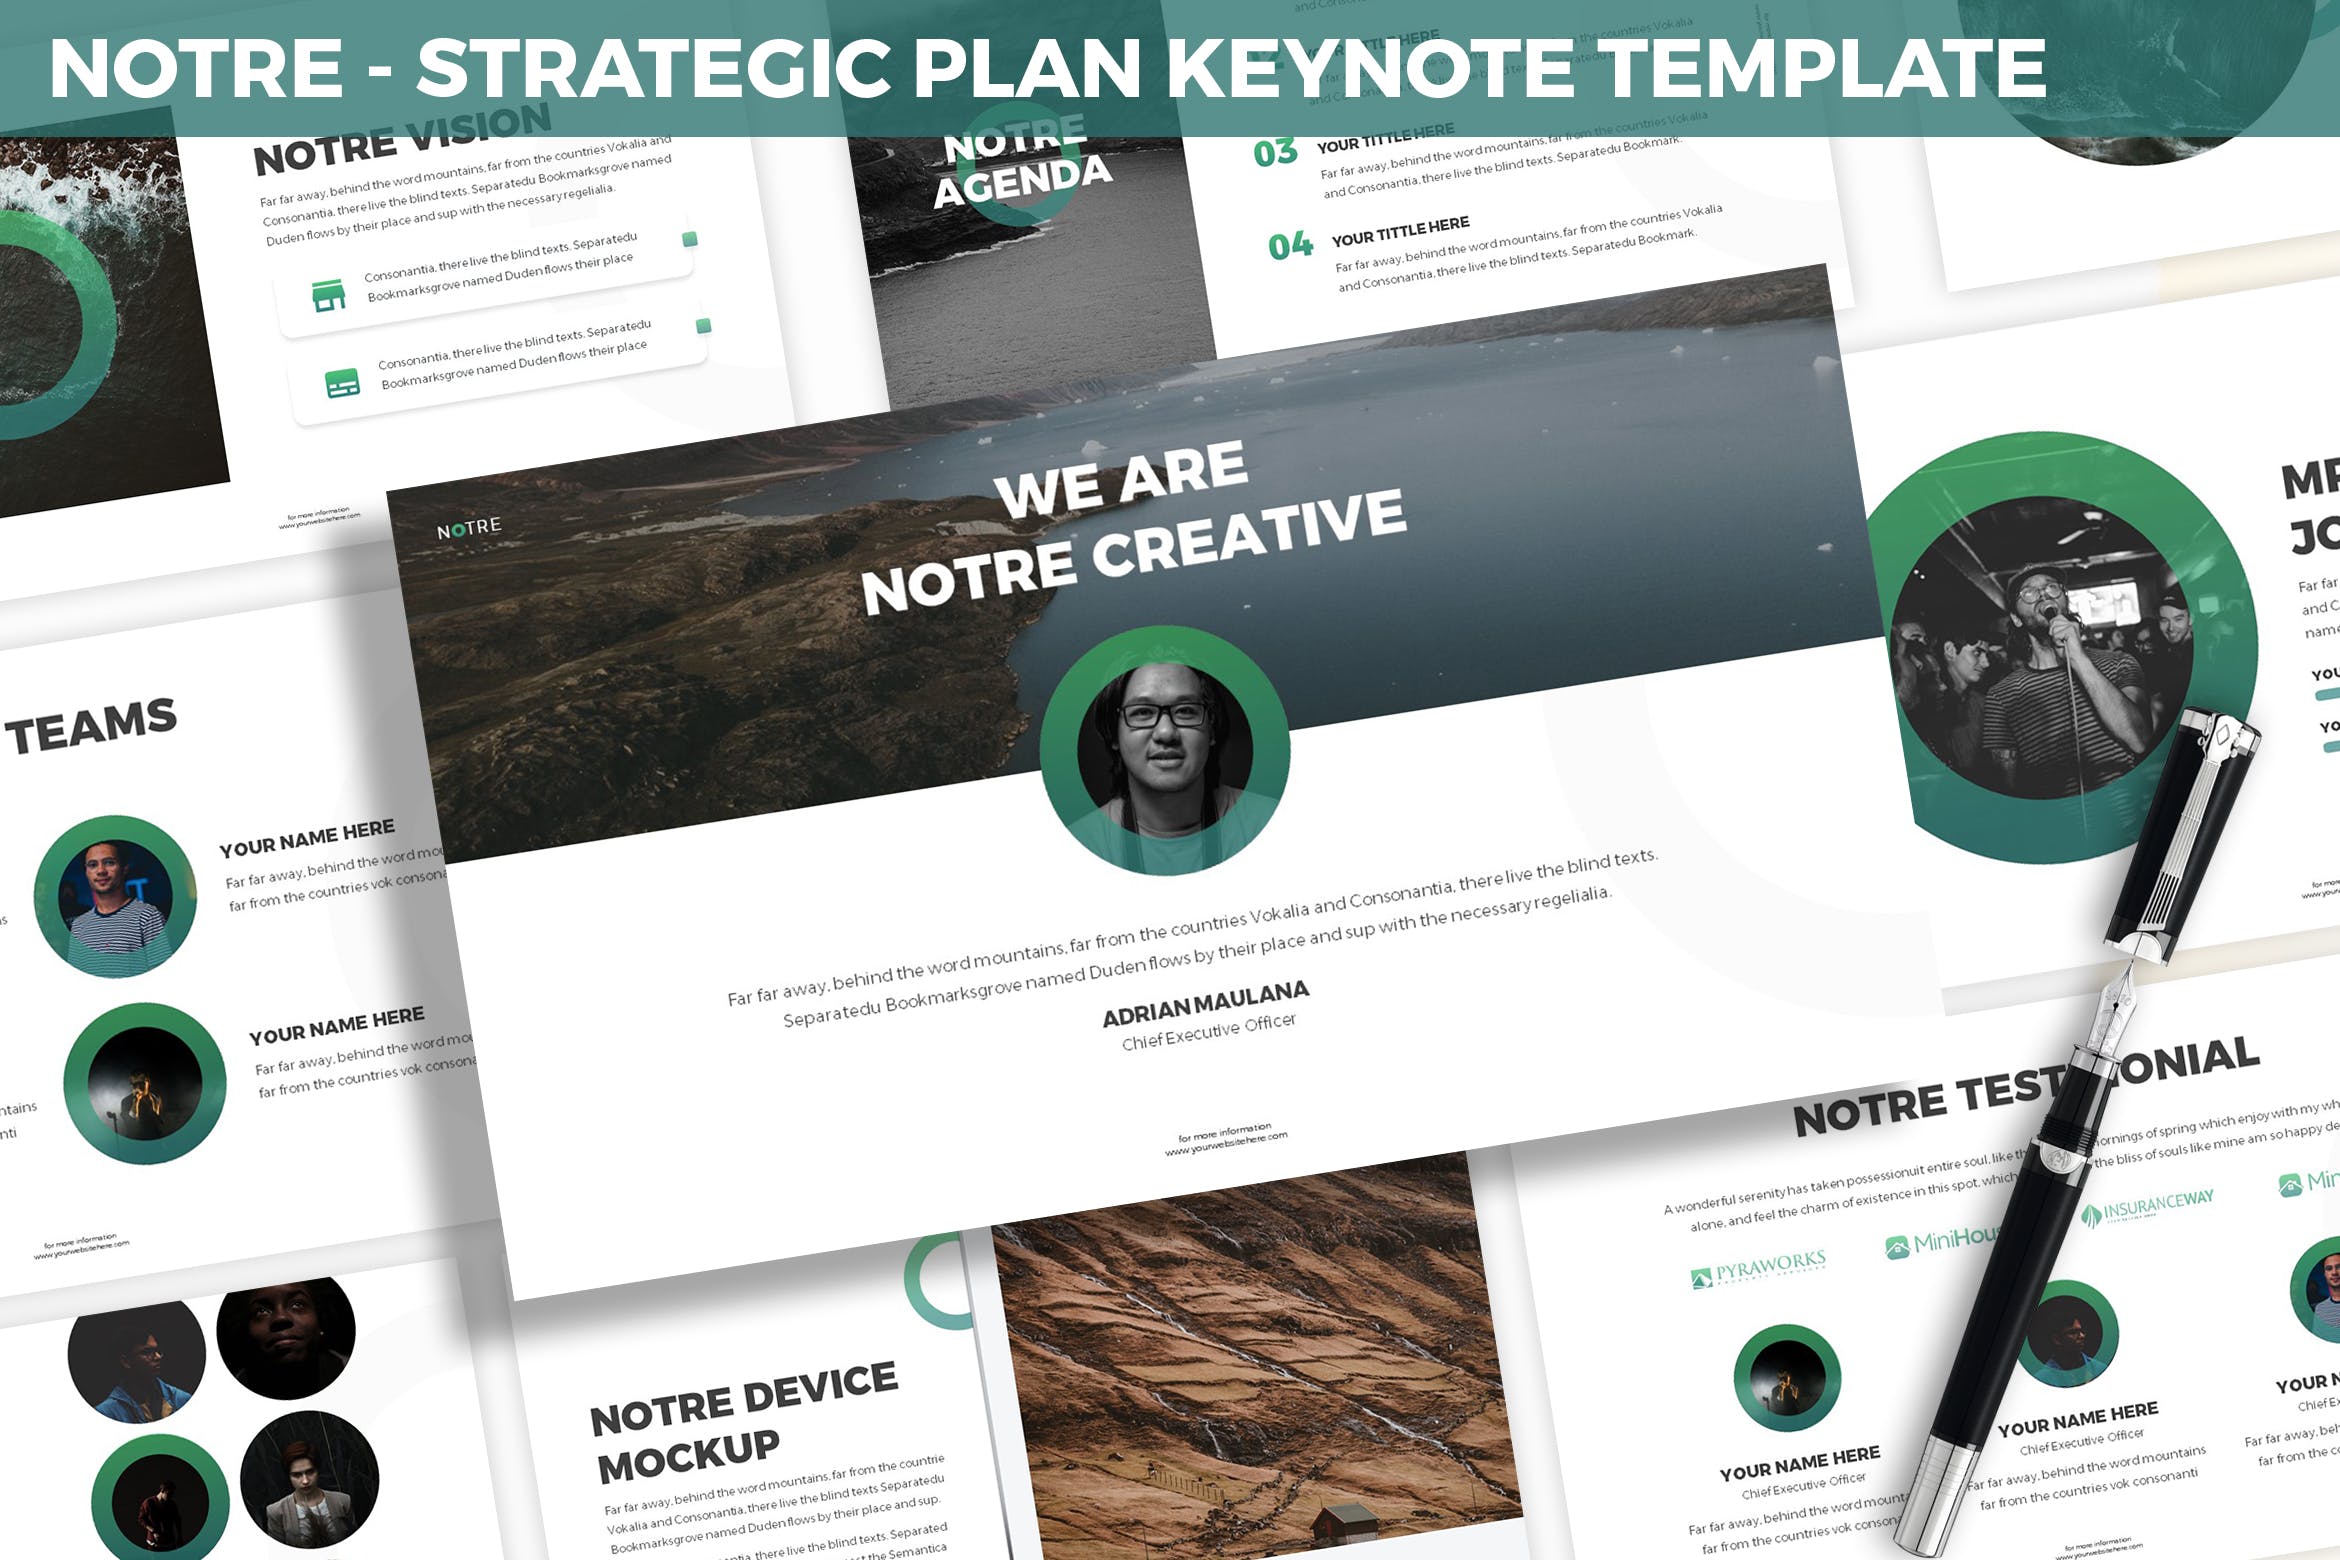 市场规划/项目计划主题素材库精选Keynote模板模板 Notre – Strategic Plan Keynote Template插图